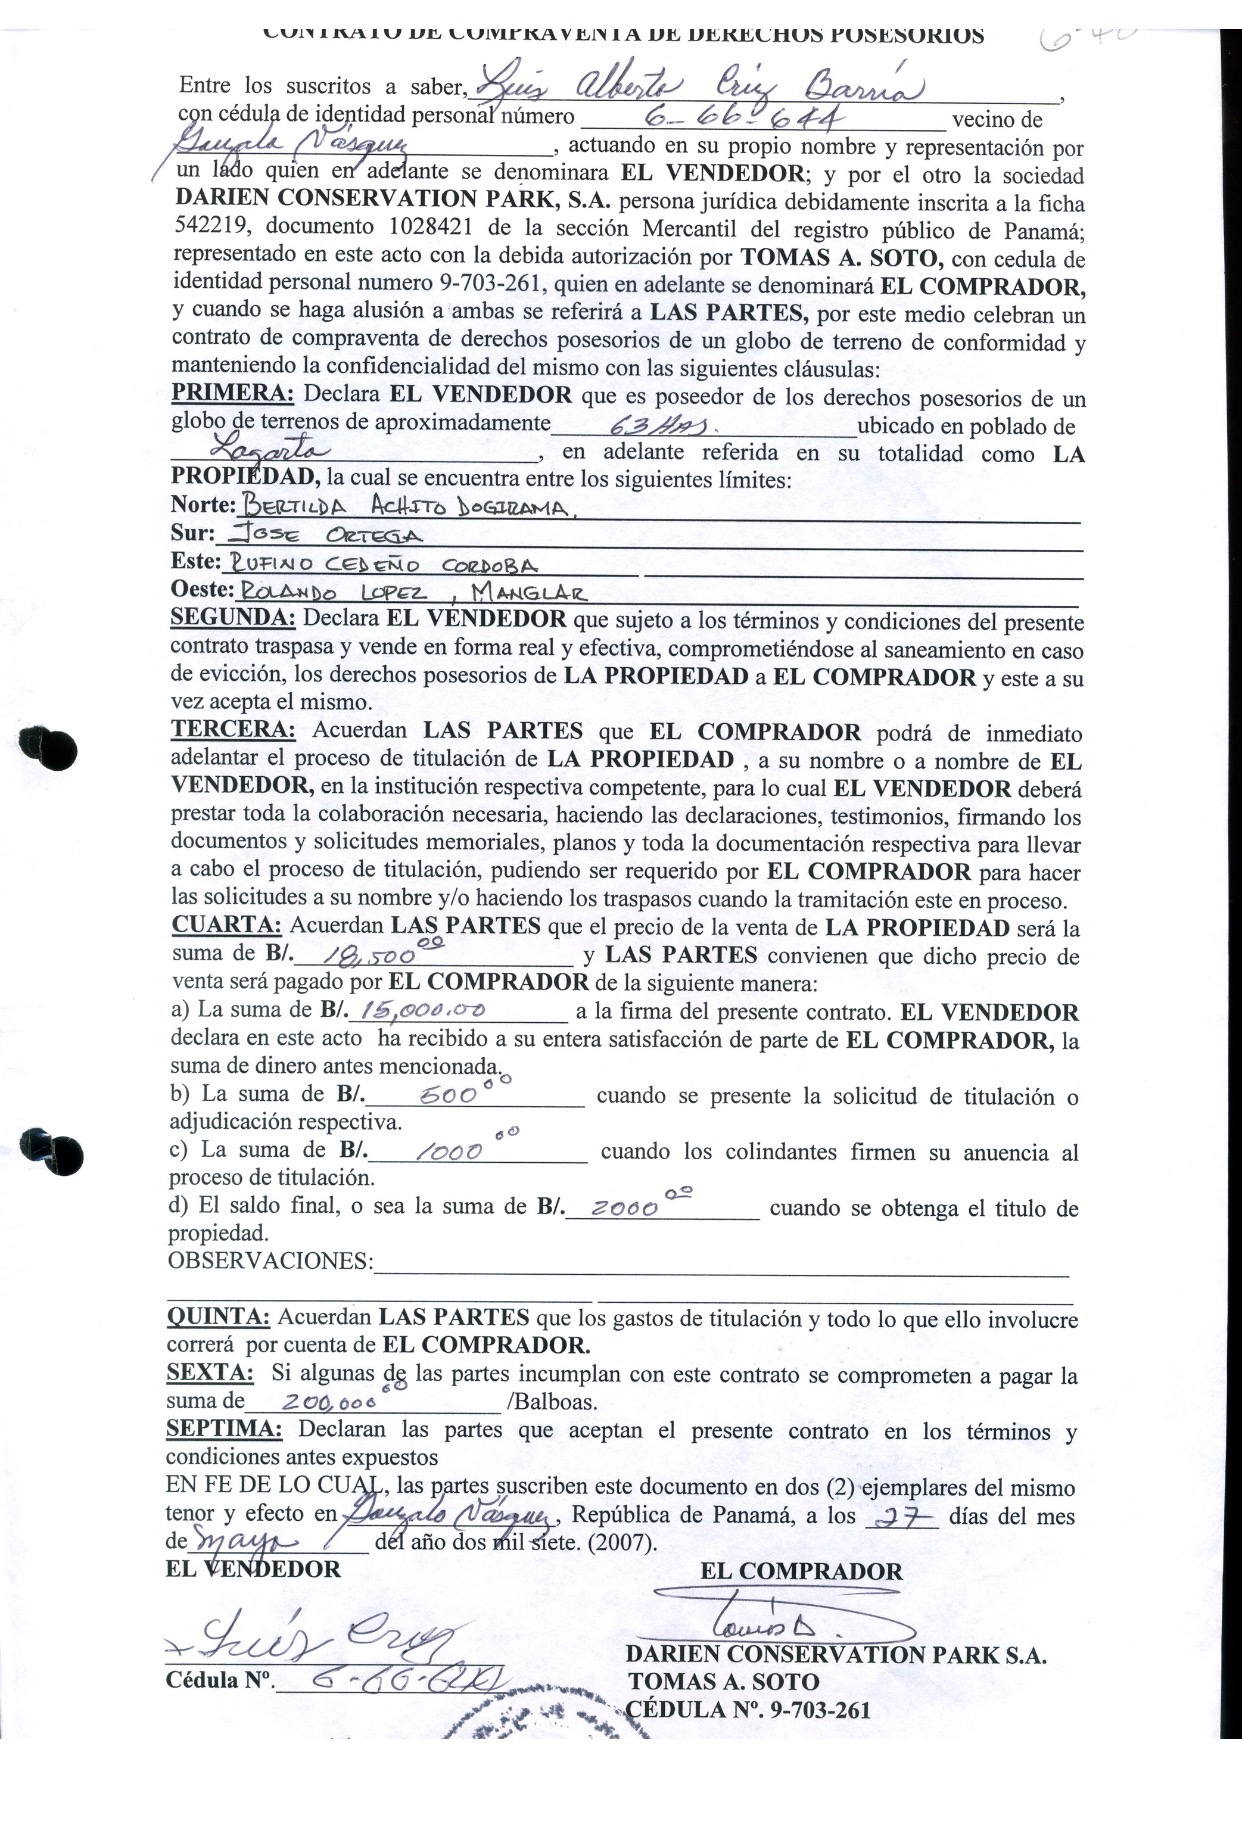 Ovidio Ernesto Diaz  Espino mostró este documento en el que compra tierras a Luis Alberto Cruz.  Se le pidió el documento de que Cruz lo había adquirido antes y nunca lo mostró.